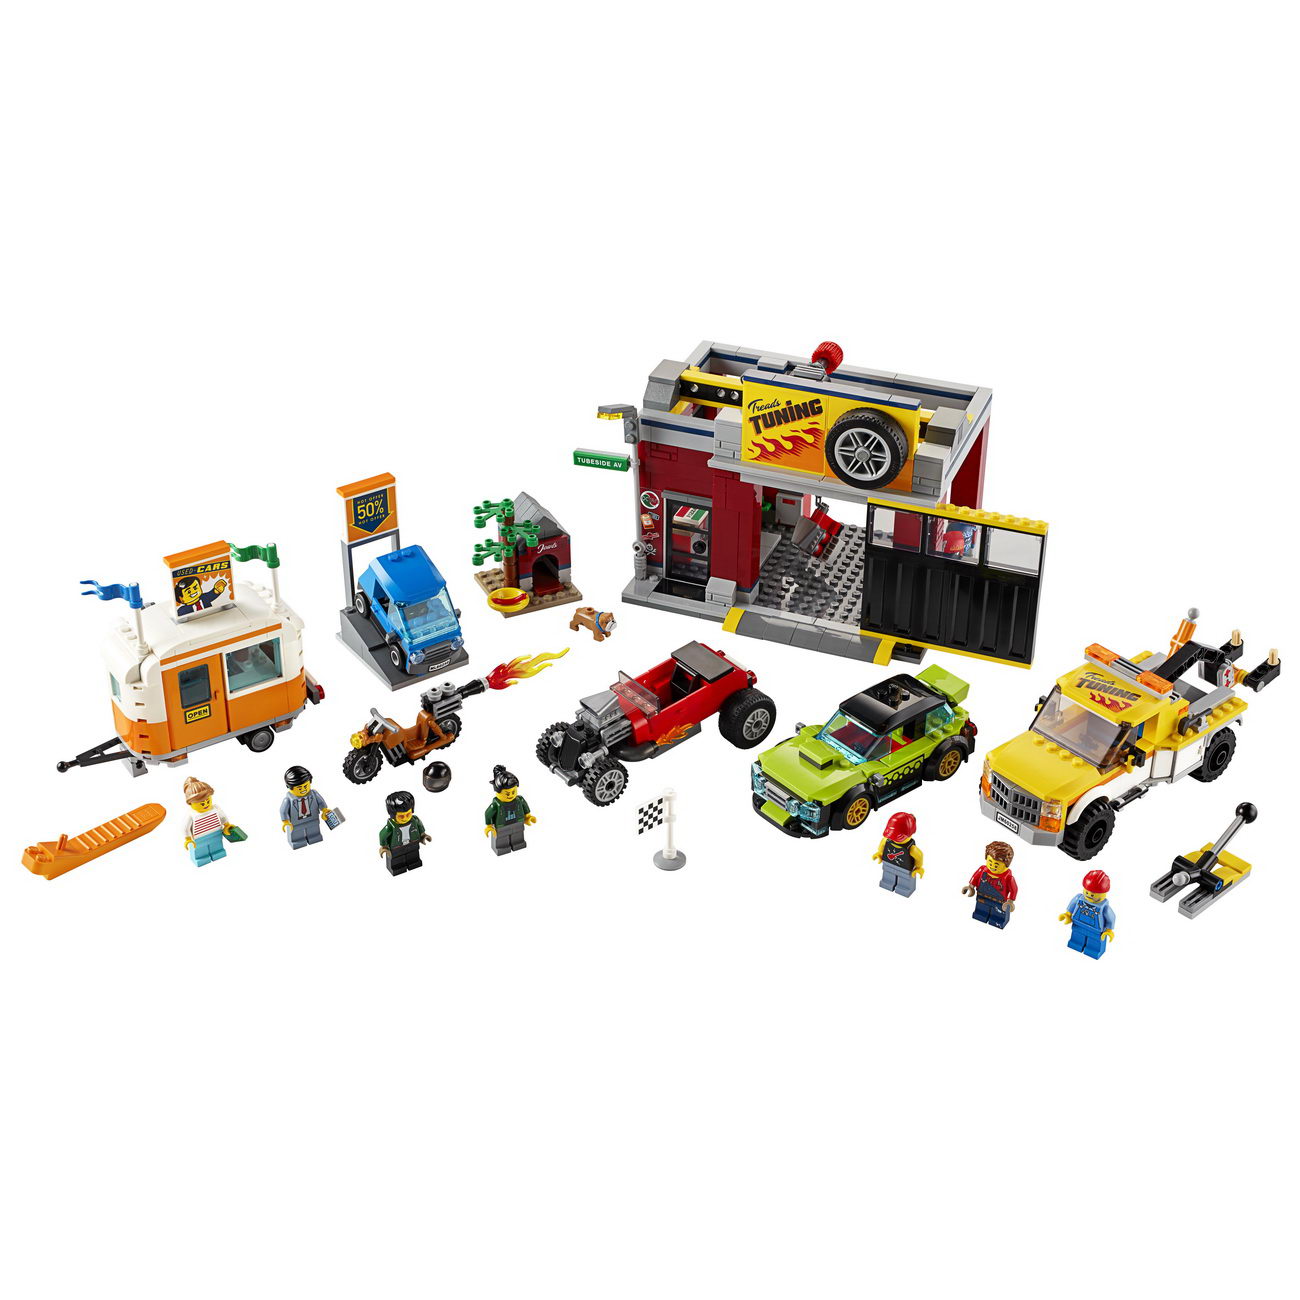 LEGO City - Tuning-Werkstatt - 60258